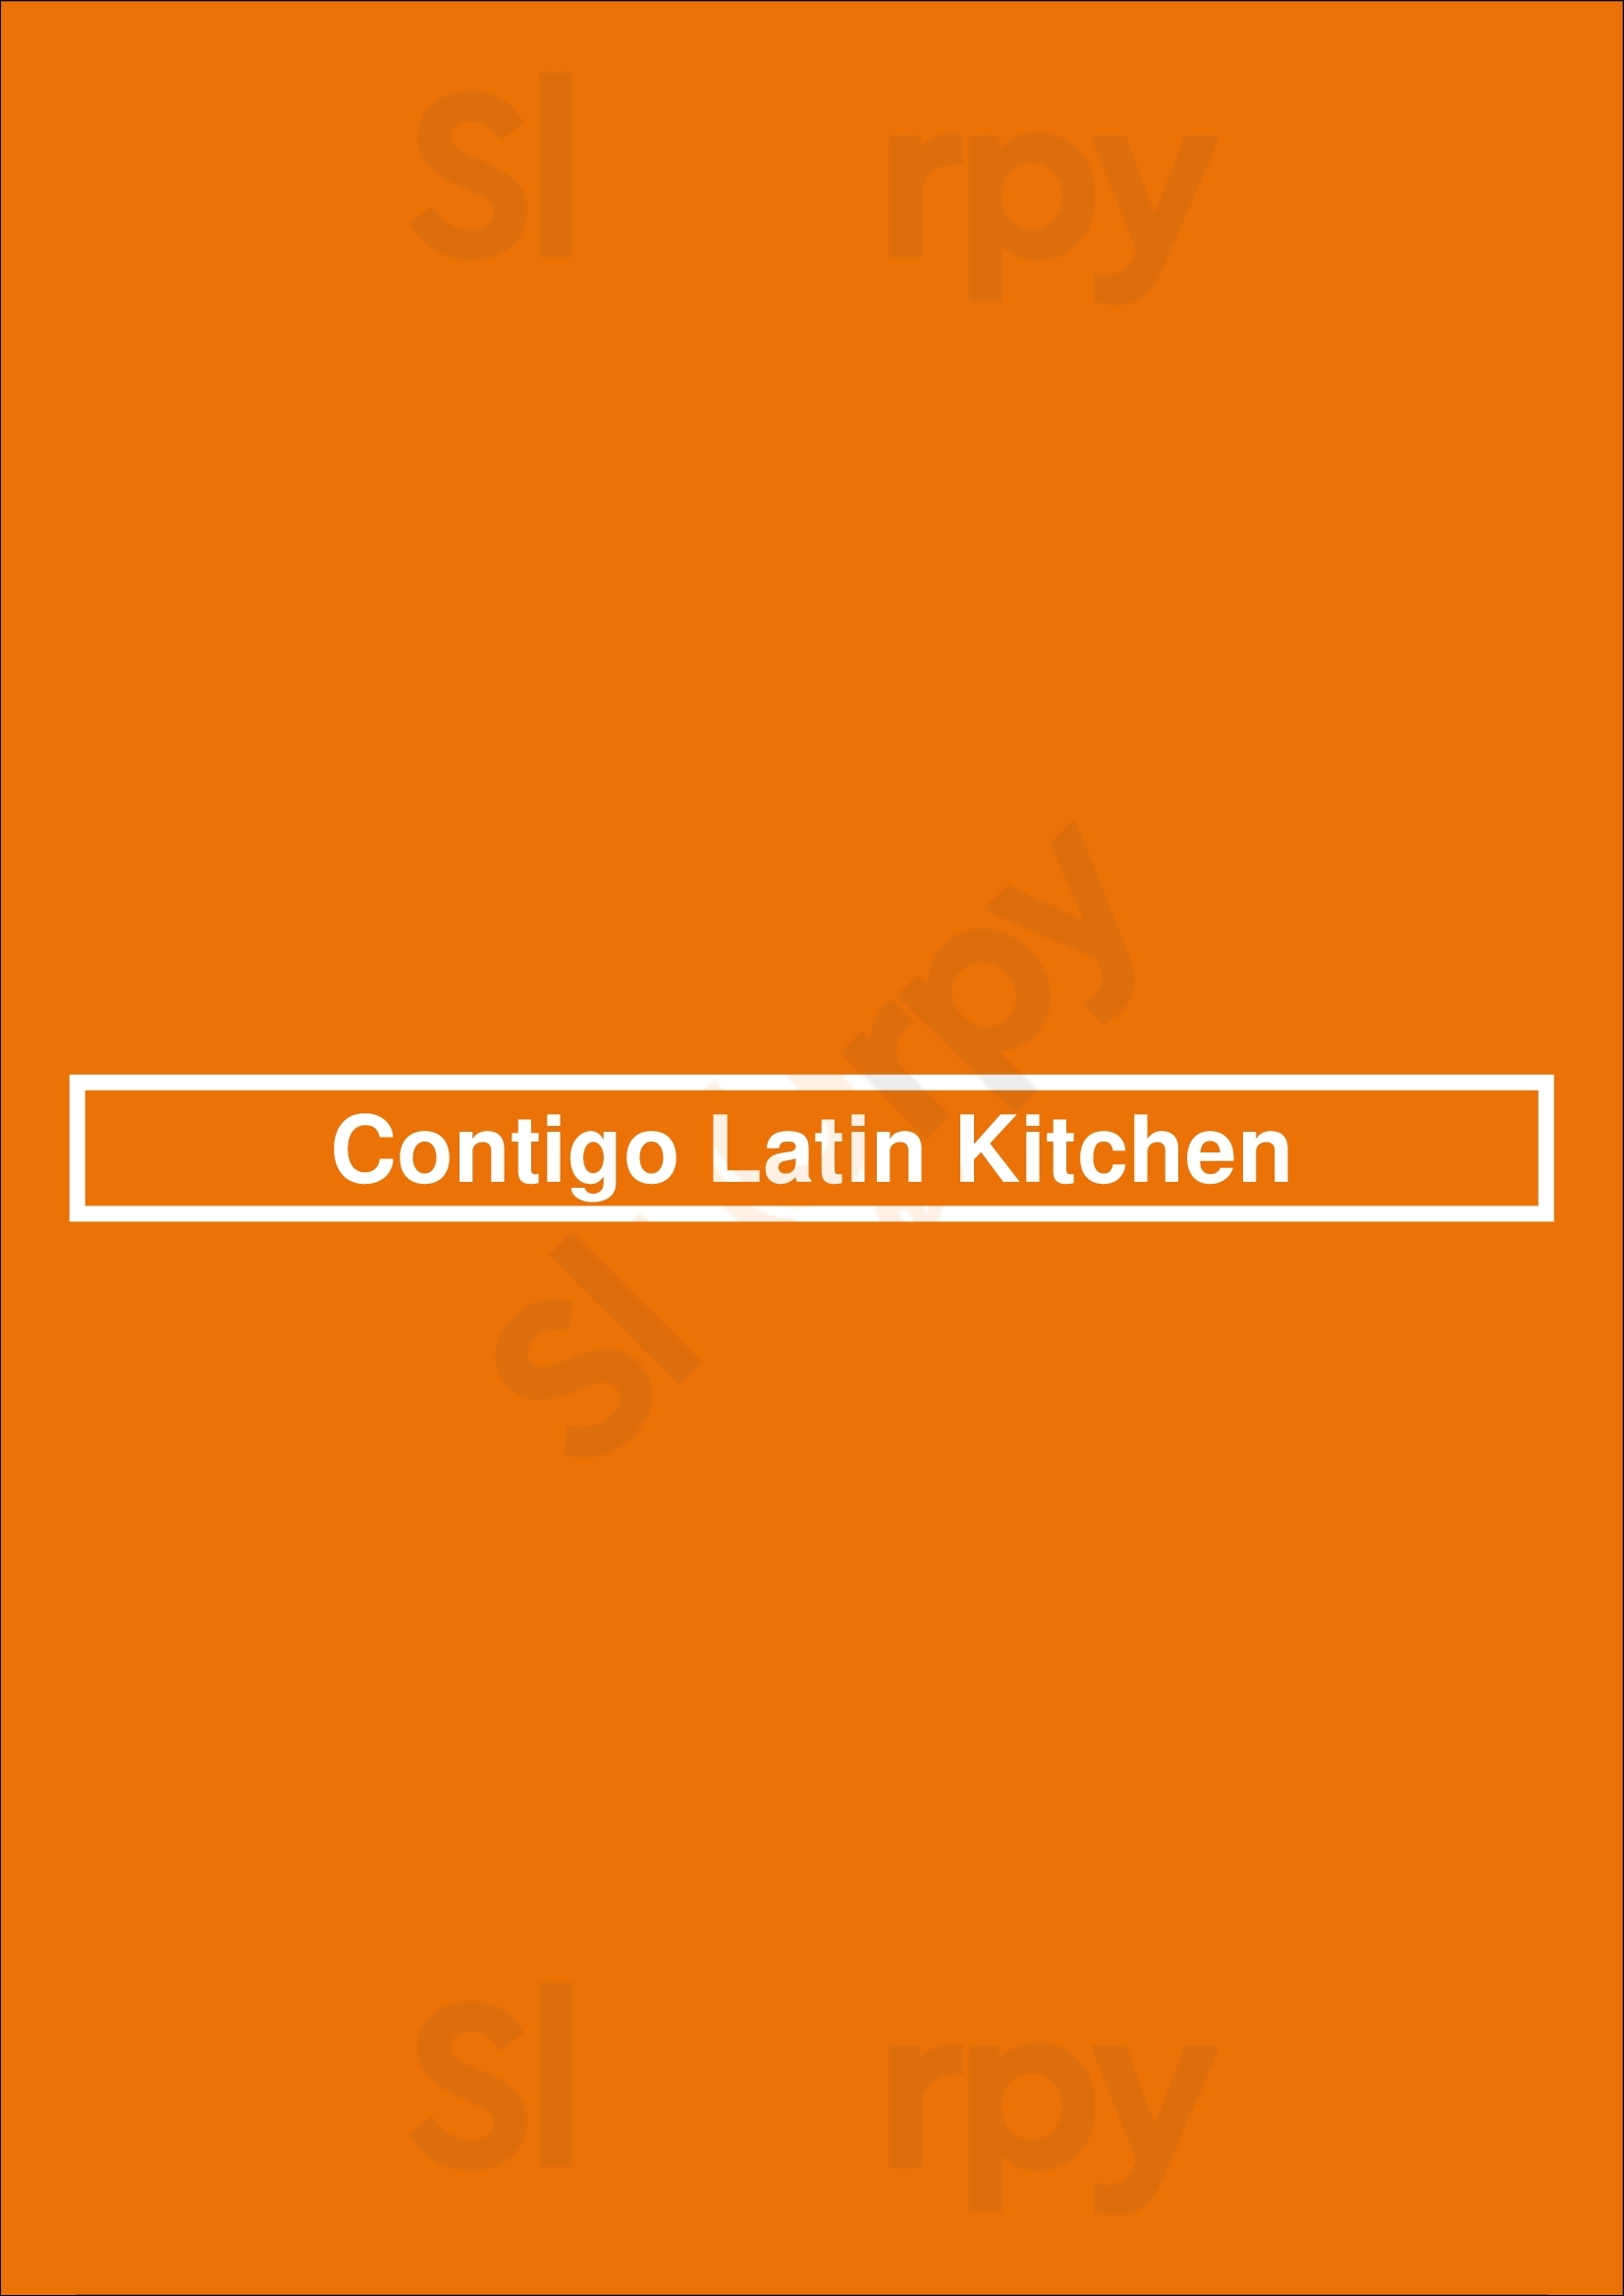 Contigo Latin Kitchen Tucson Menu - 1